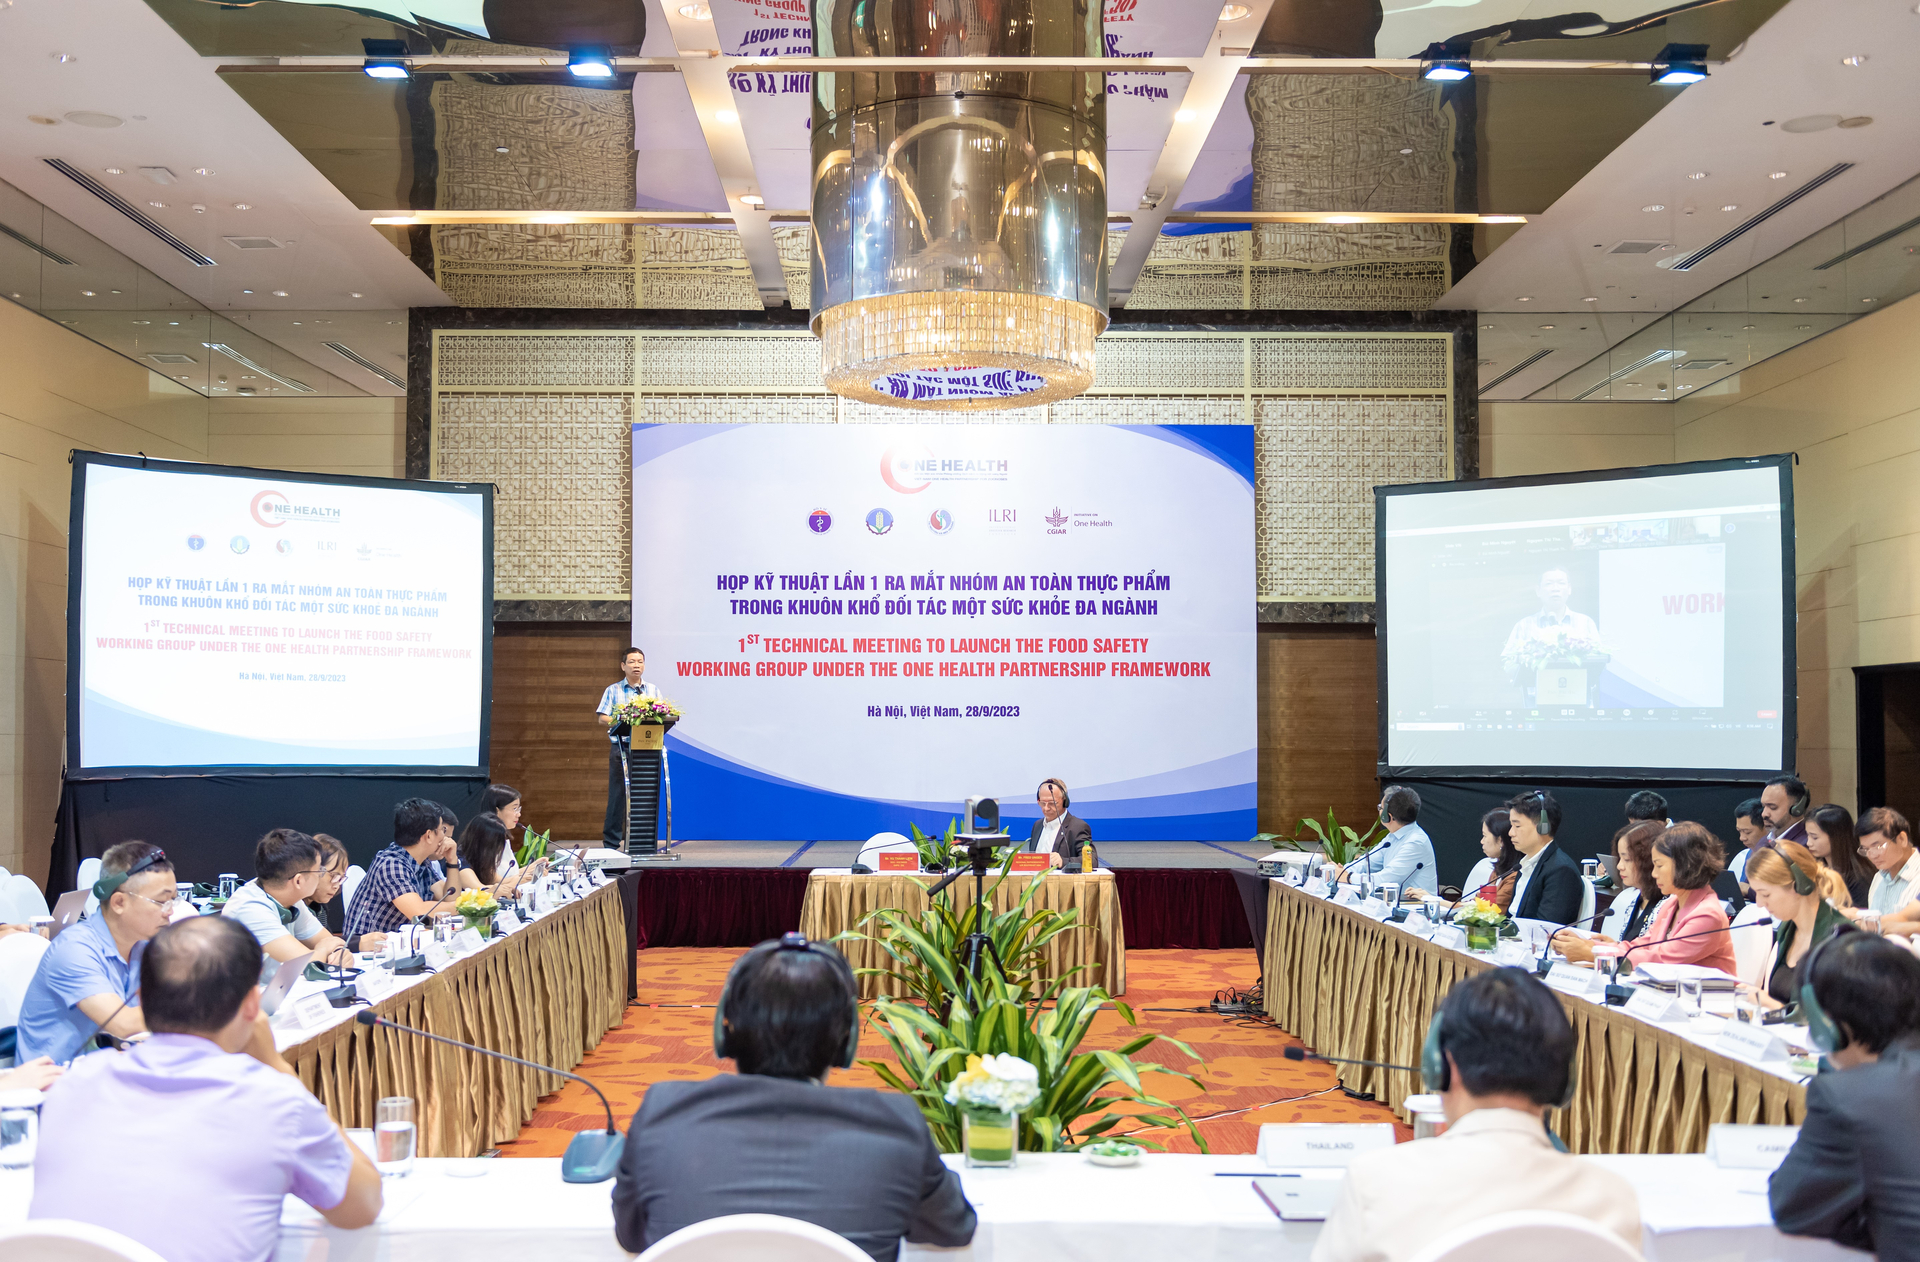 Cuộc họp lần 1 Nhóm công tác kỹ thuật An toàn thực phẩm (ATTP) trong khuôn khổ Khung Đối tác Một sức khỏe được tổ chức ngày 28/9 tại Hà Nội. Ảnh: Ngọc Sơn. 